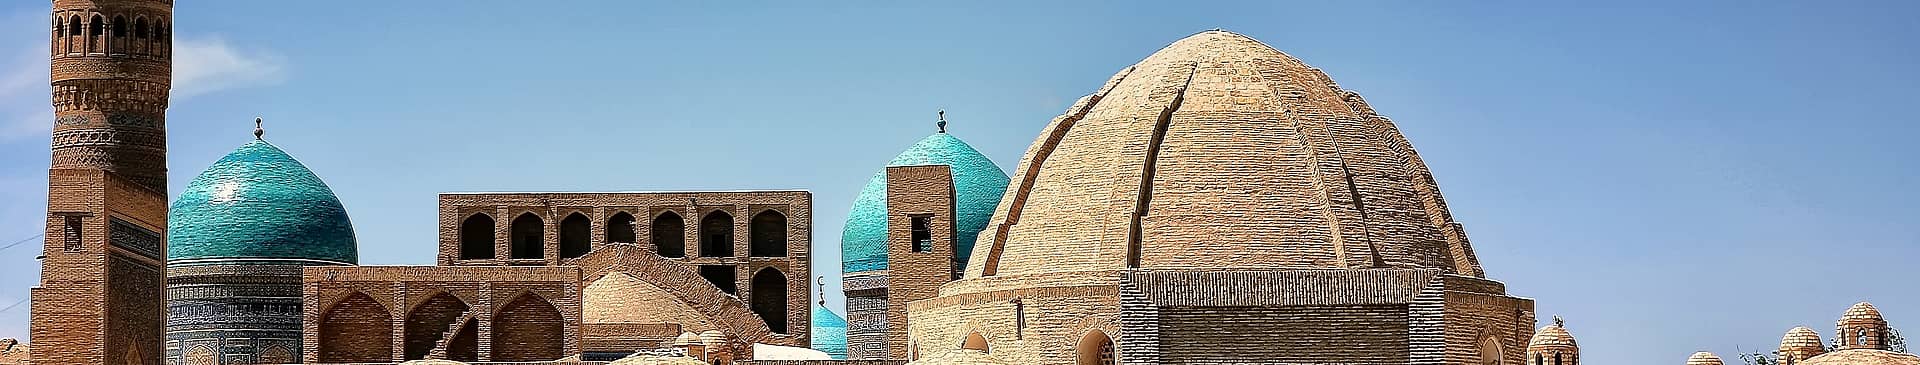 Uzbekistan in October